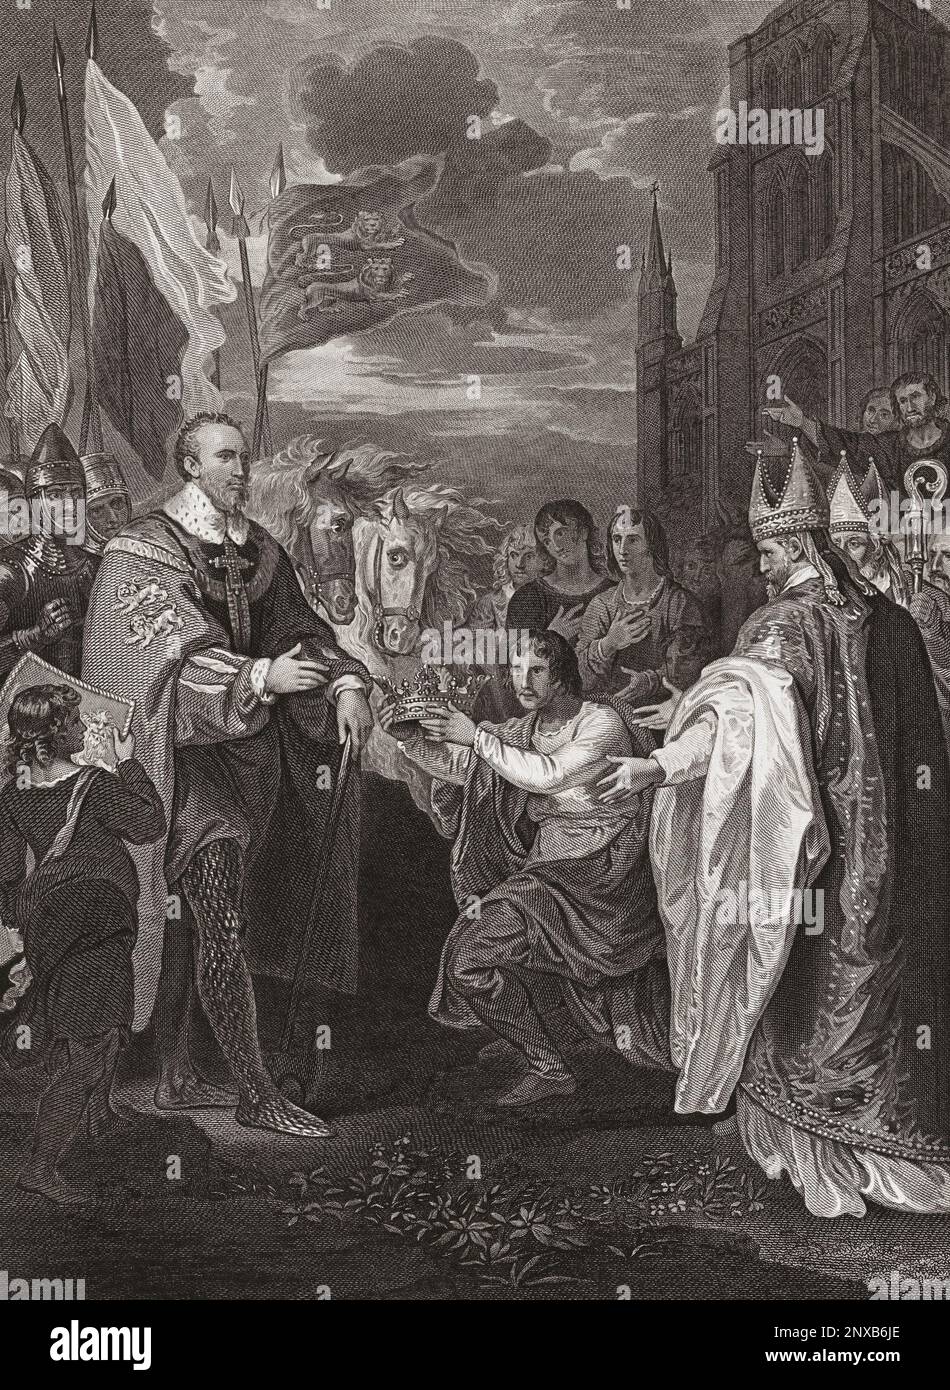 William der erste, der die Krone Englands erhält. Nach einem Abdruck von George Noble aus einem Gemälde von Benjamin West, das ursprünglich in der historischen Galerie von Robert Bowyer zu sehen war, die zwischen 1793 und 1806 erschienen ist. Stockfoto